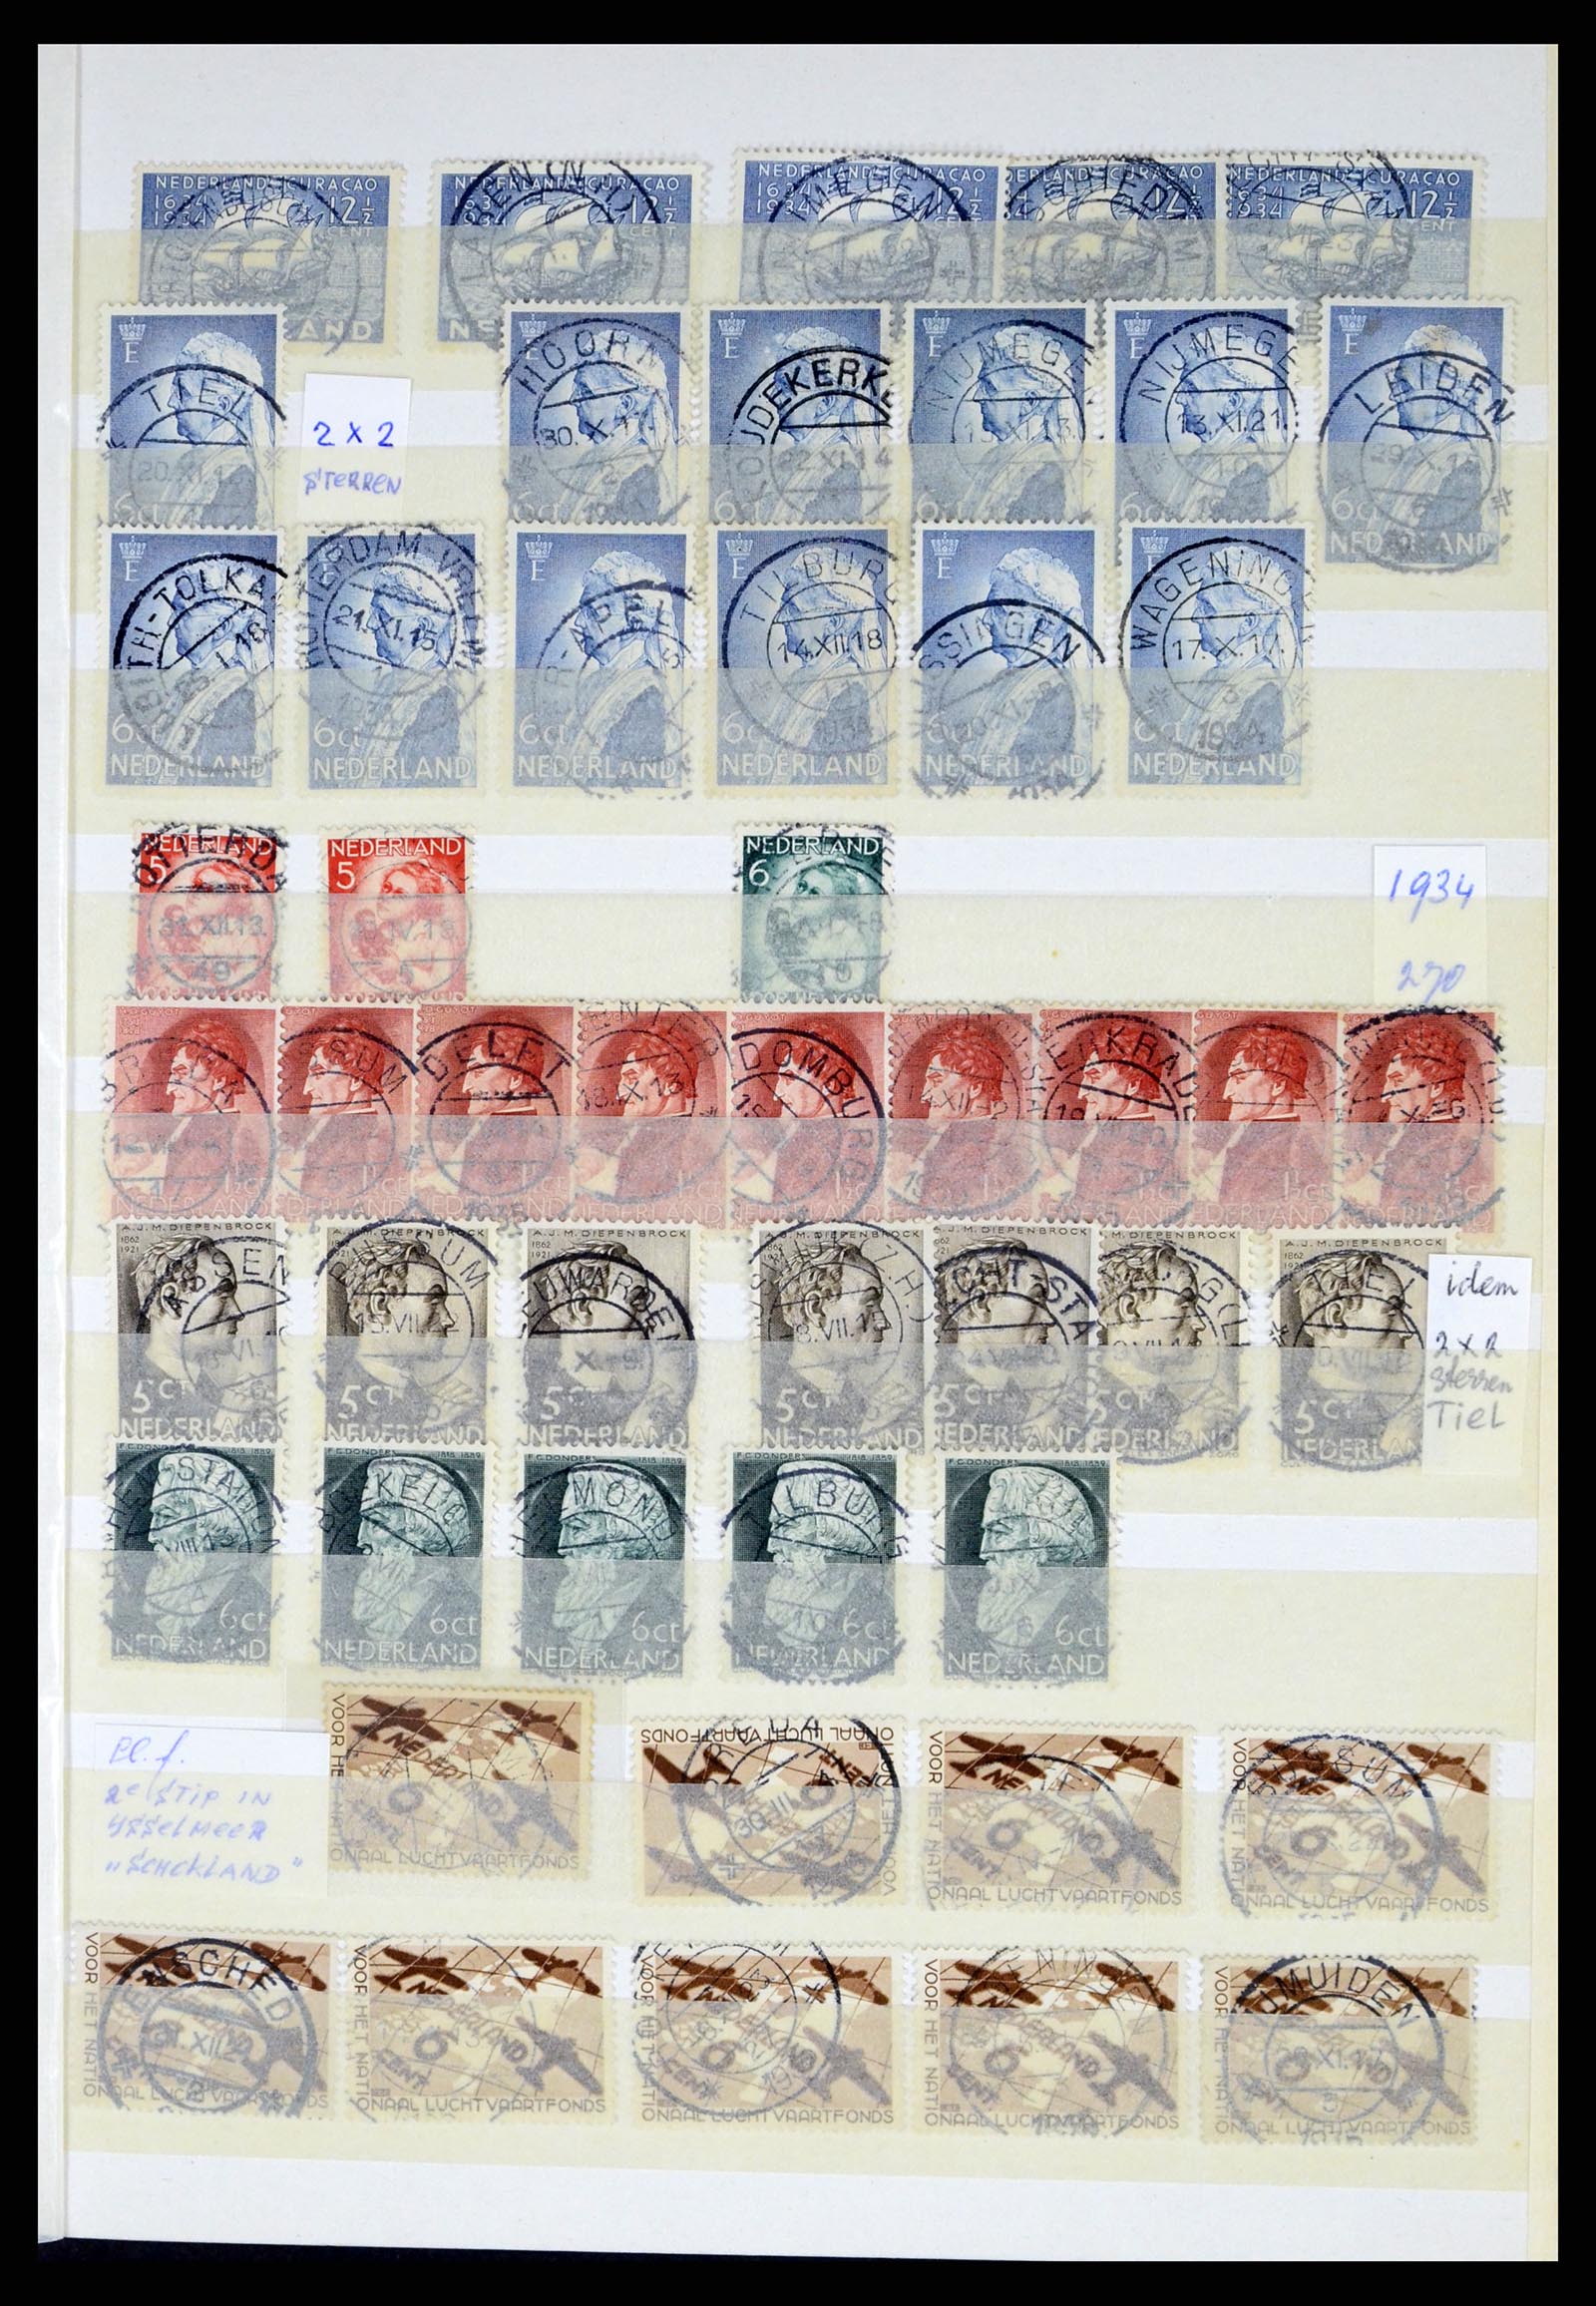 37424 019 - Postzegelverzameling 37424 Nederland kortebalk stempels.